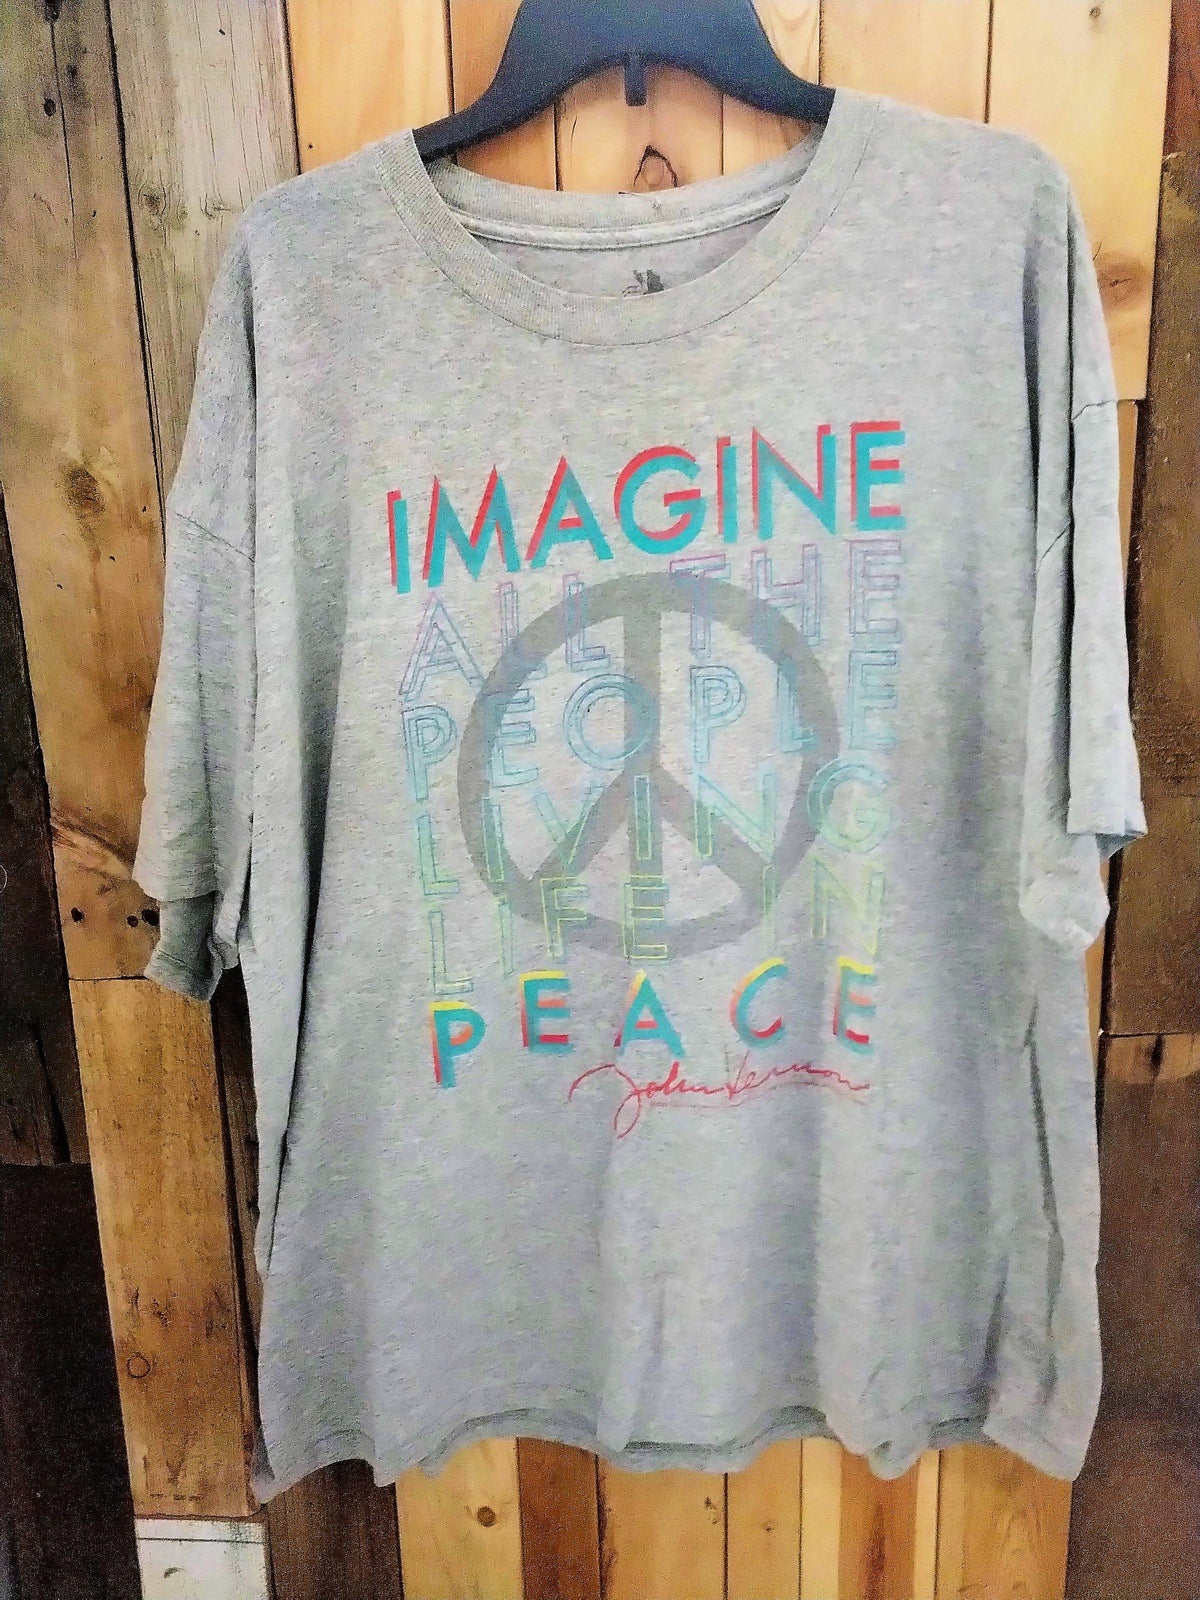 Zion "Imagine" T Shirt Size 2X 747894WH